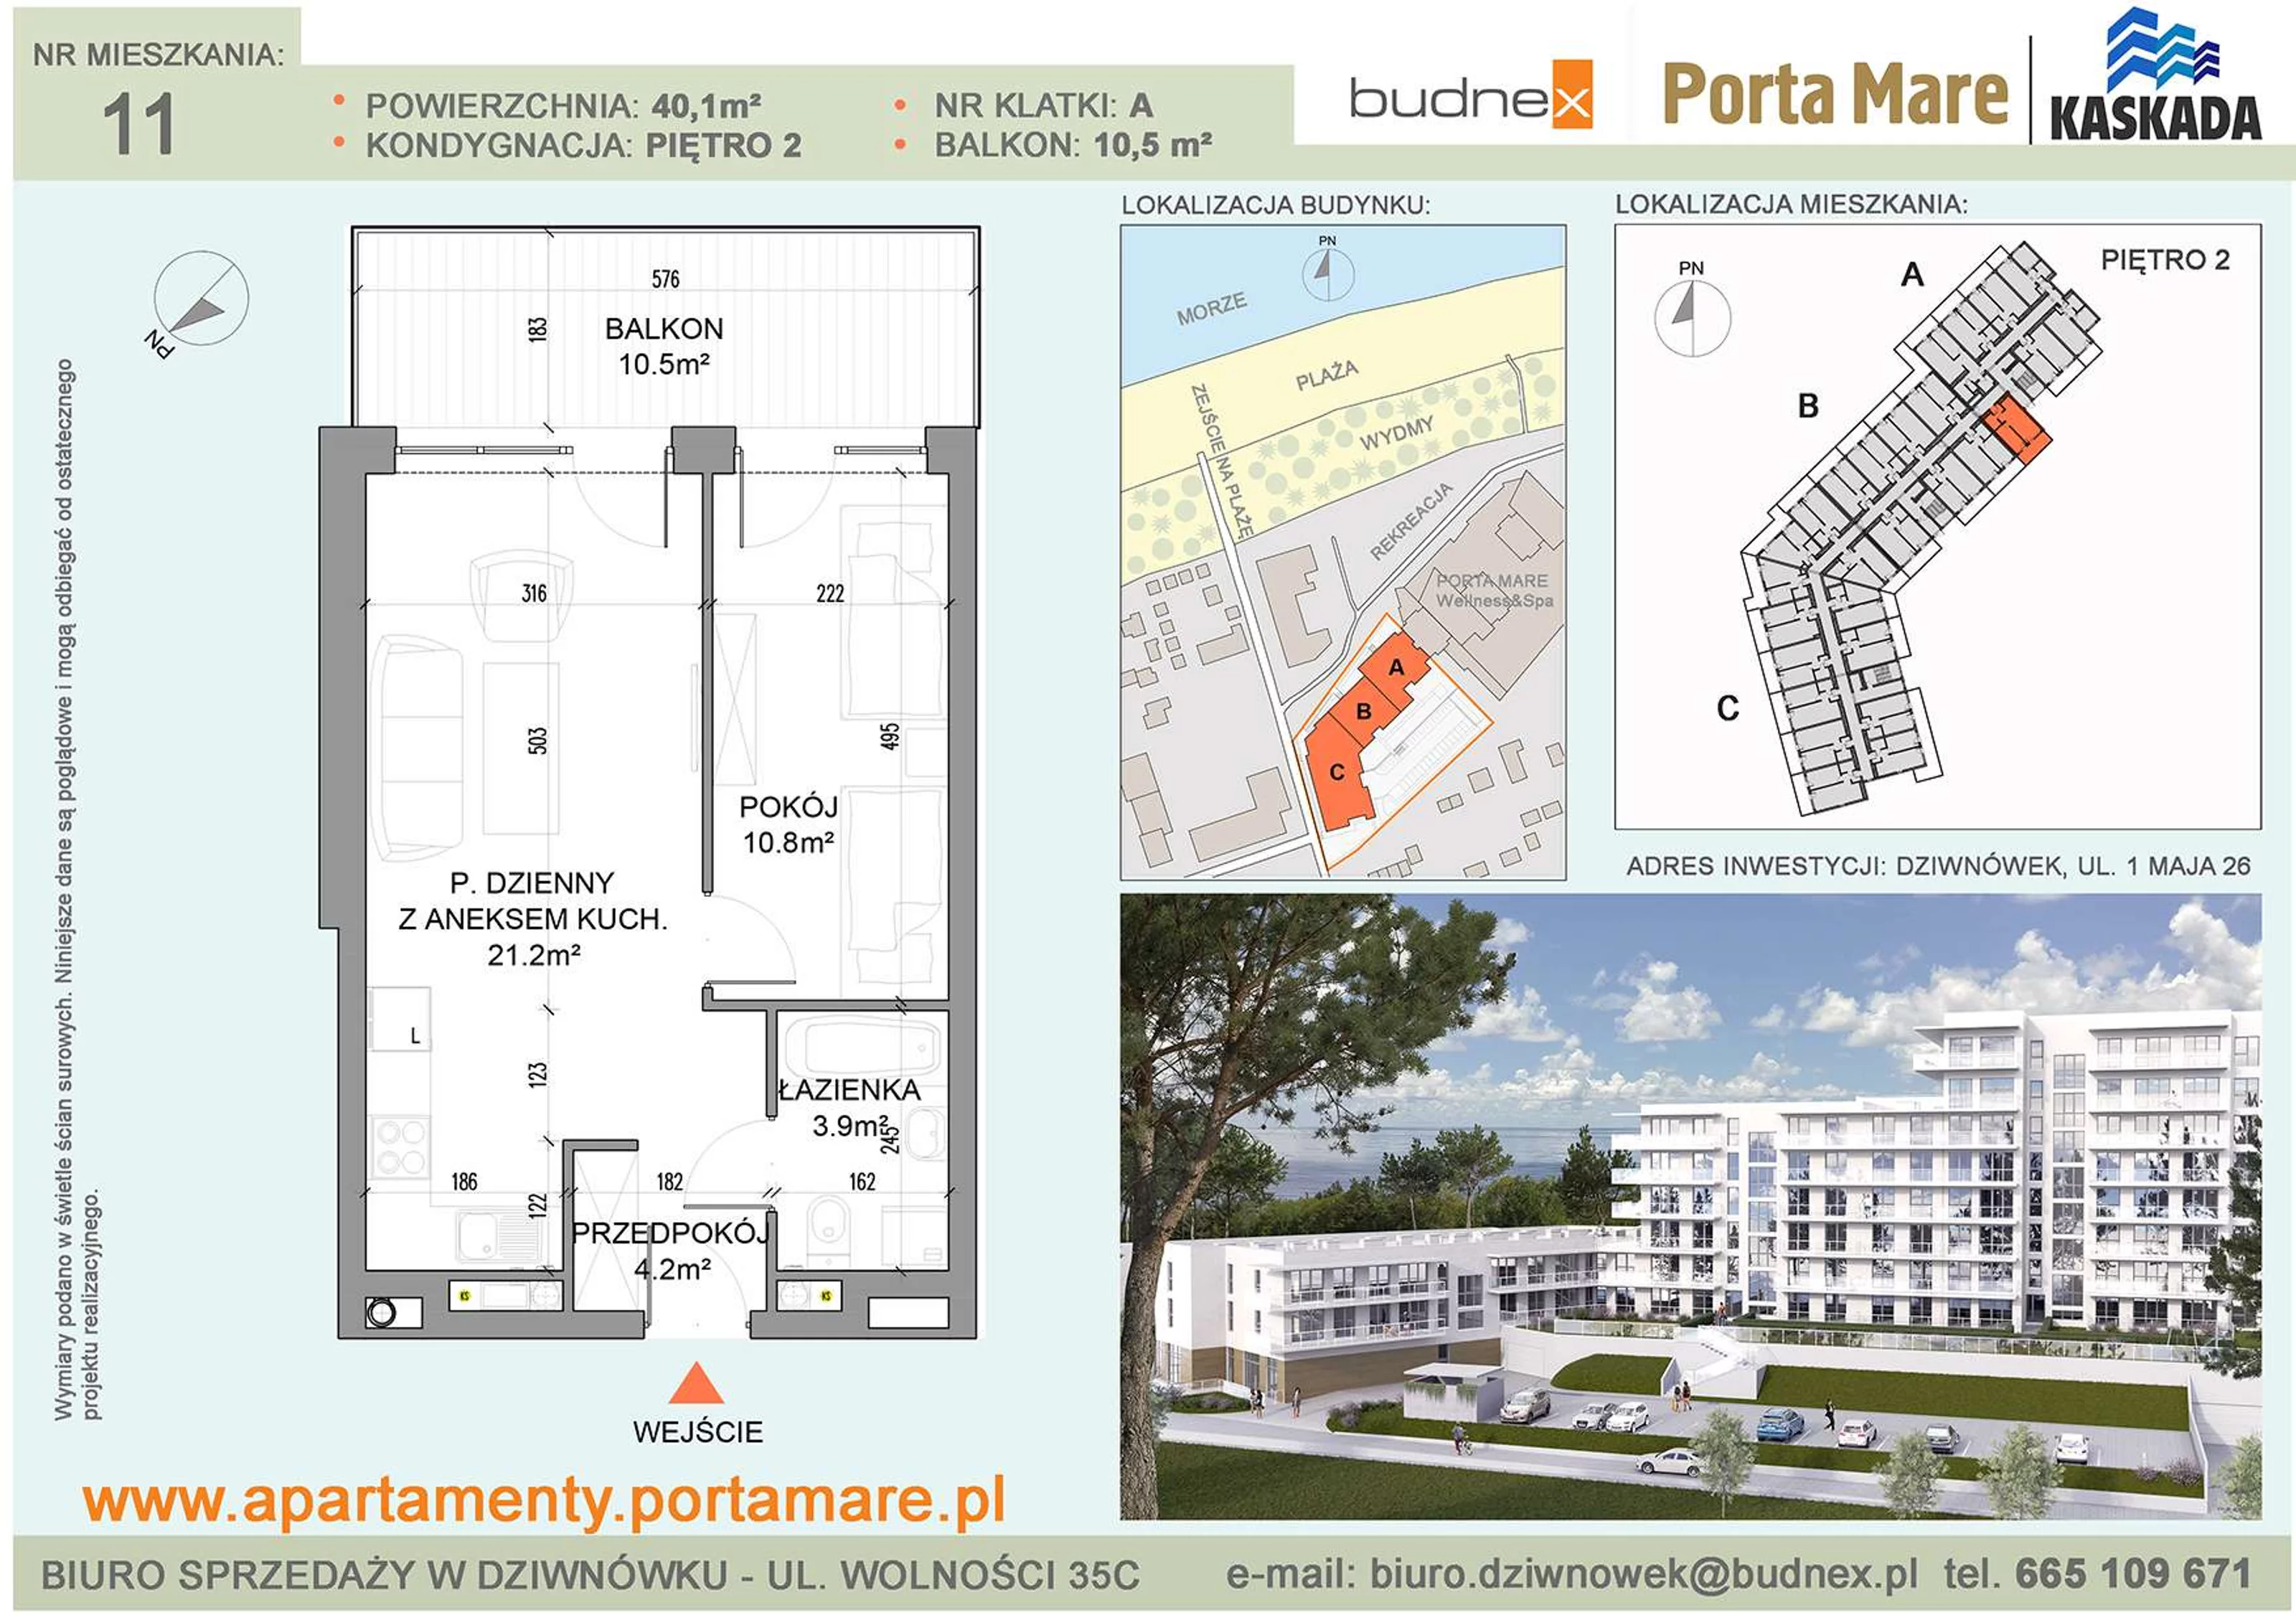 Apartament 40,10 m², piętro 2, oferta nr A/M11, Porta Mare Kaskada, Dziwnówek, ul. 1 Maja 26